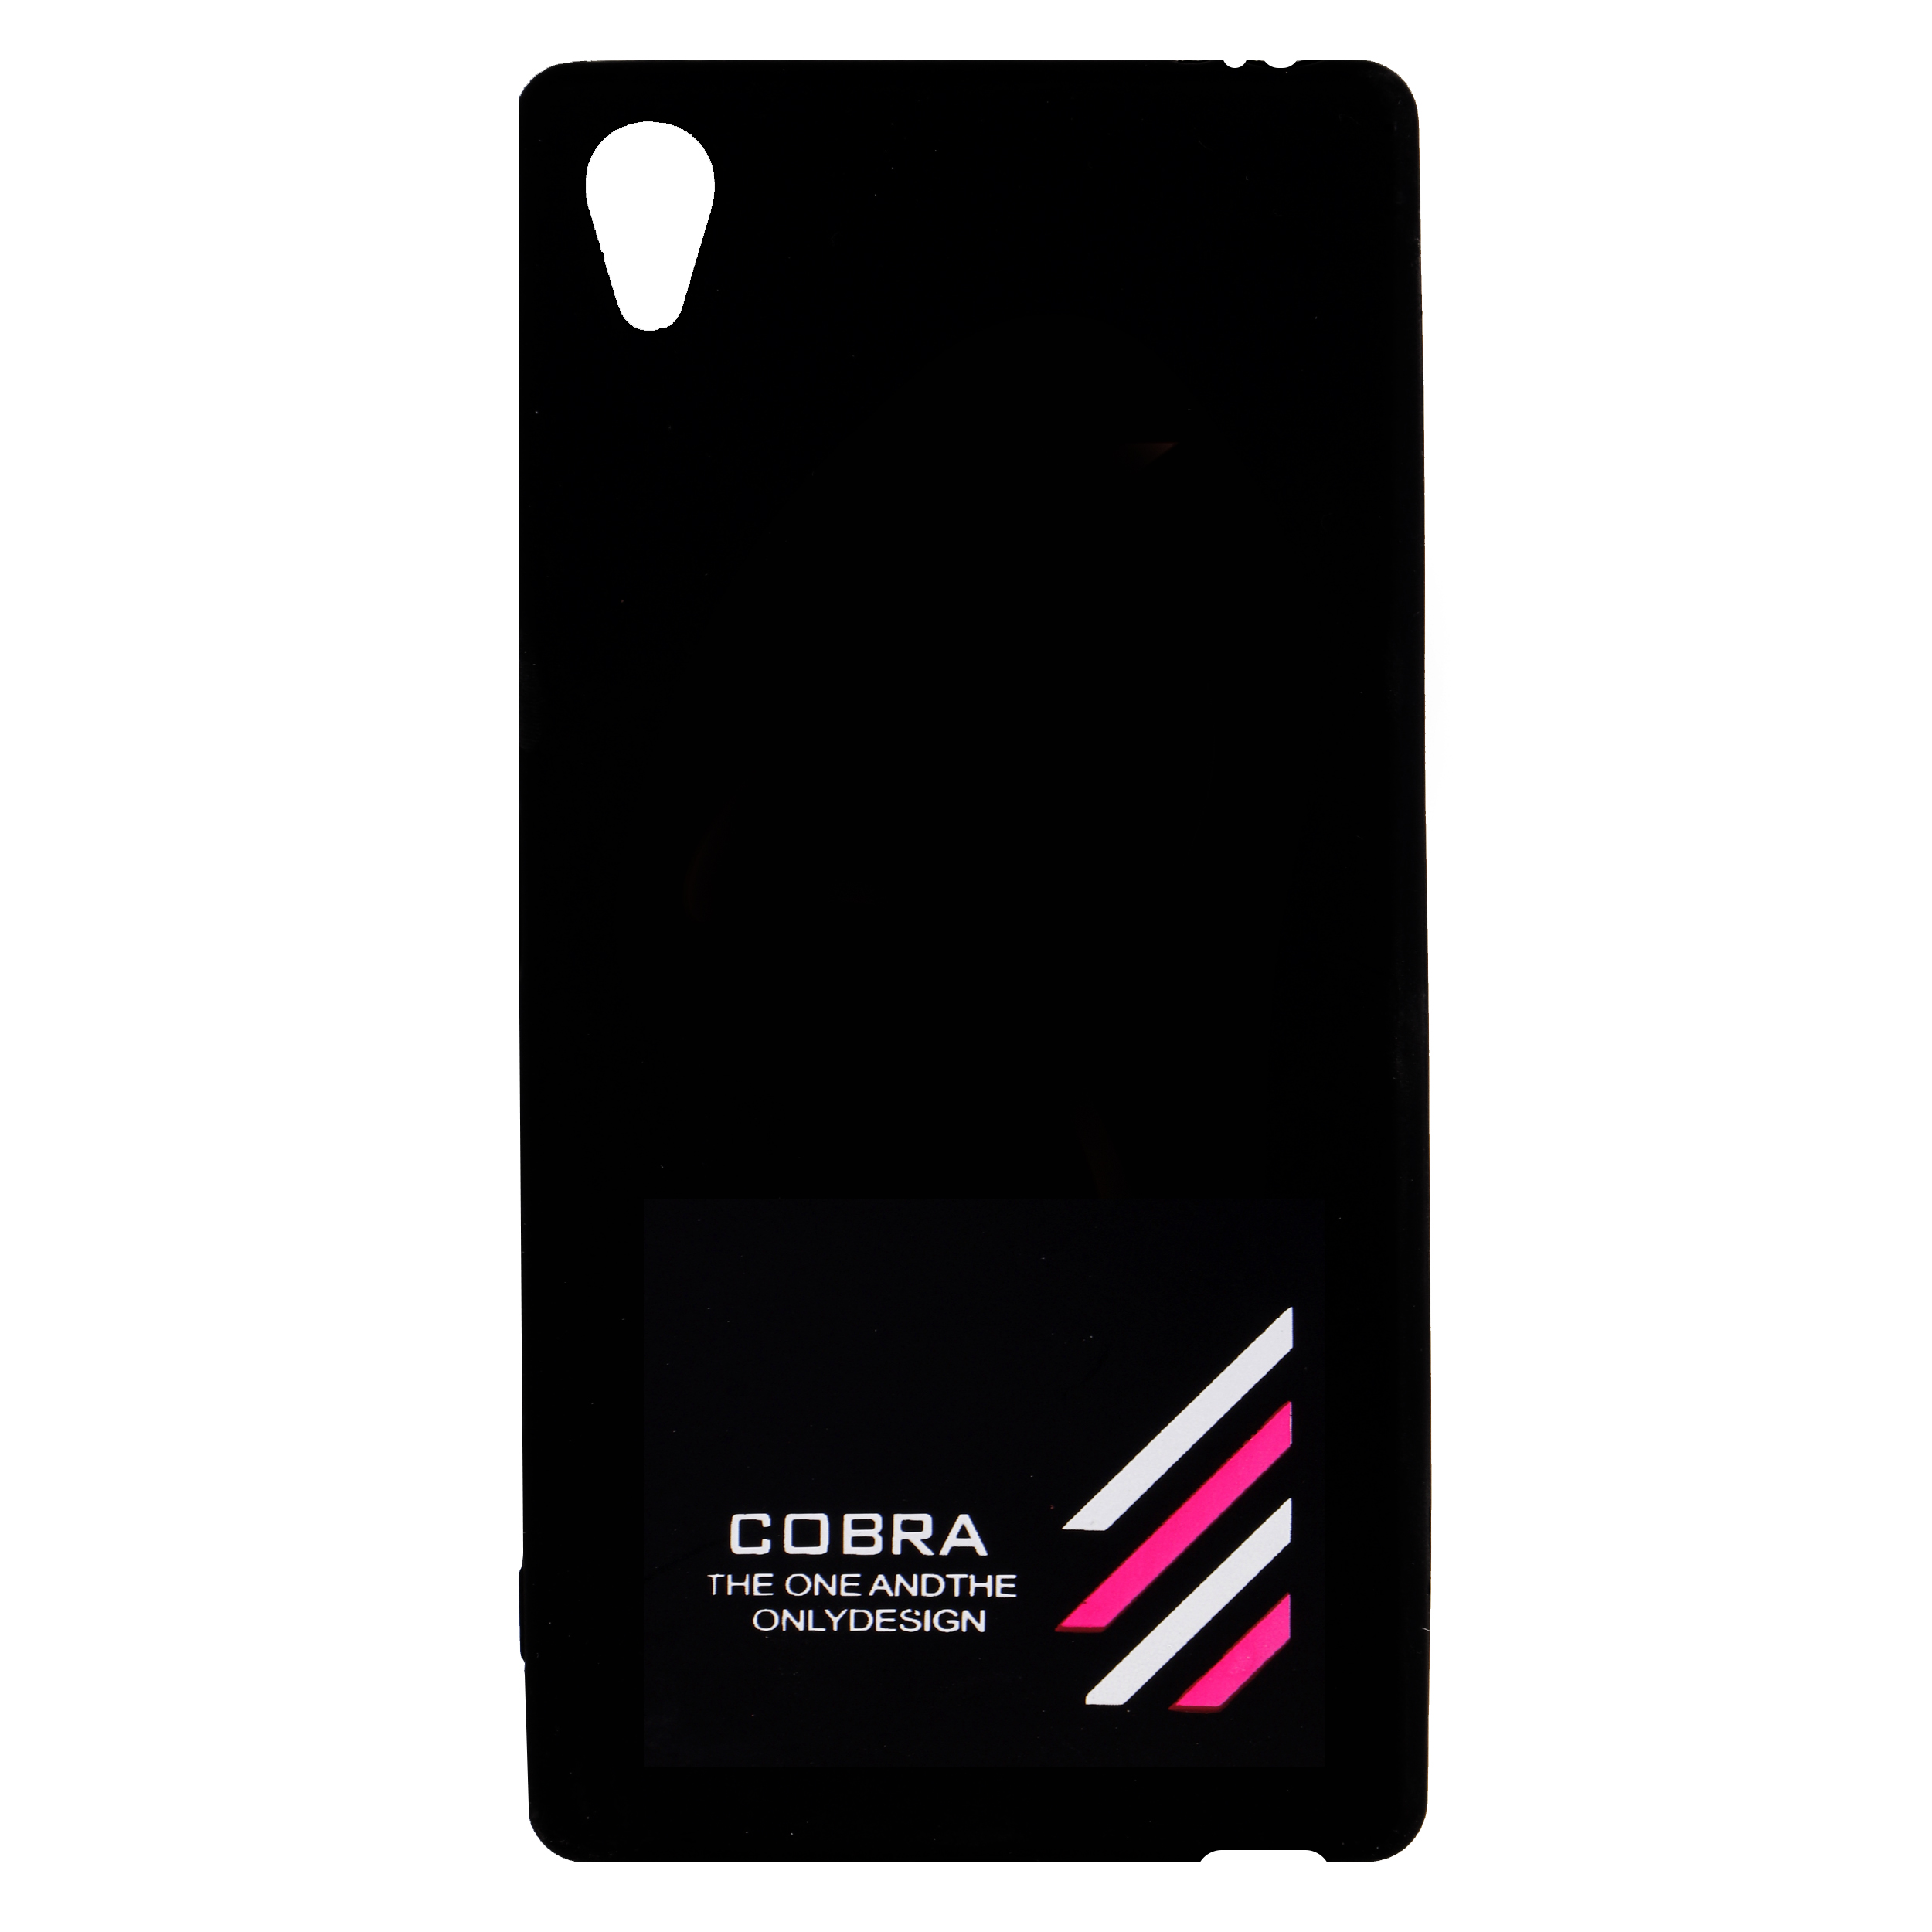 کاور کبرا مدل r5 مناسب برای گوشی موبایل سونی Xperia Z5 pro